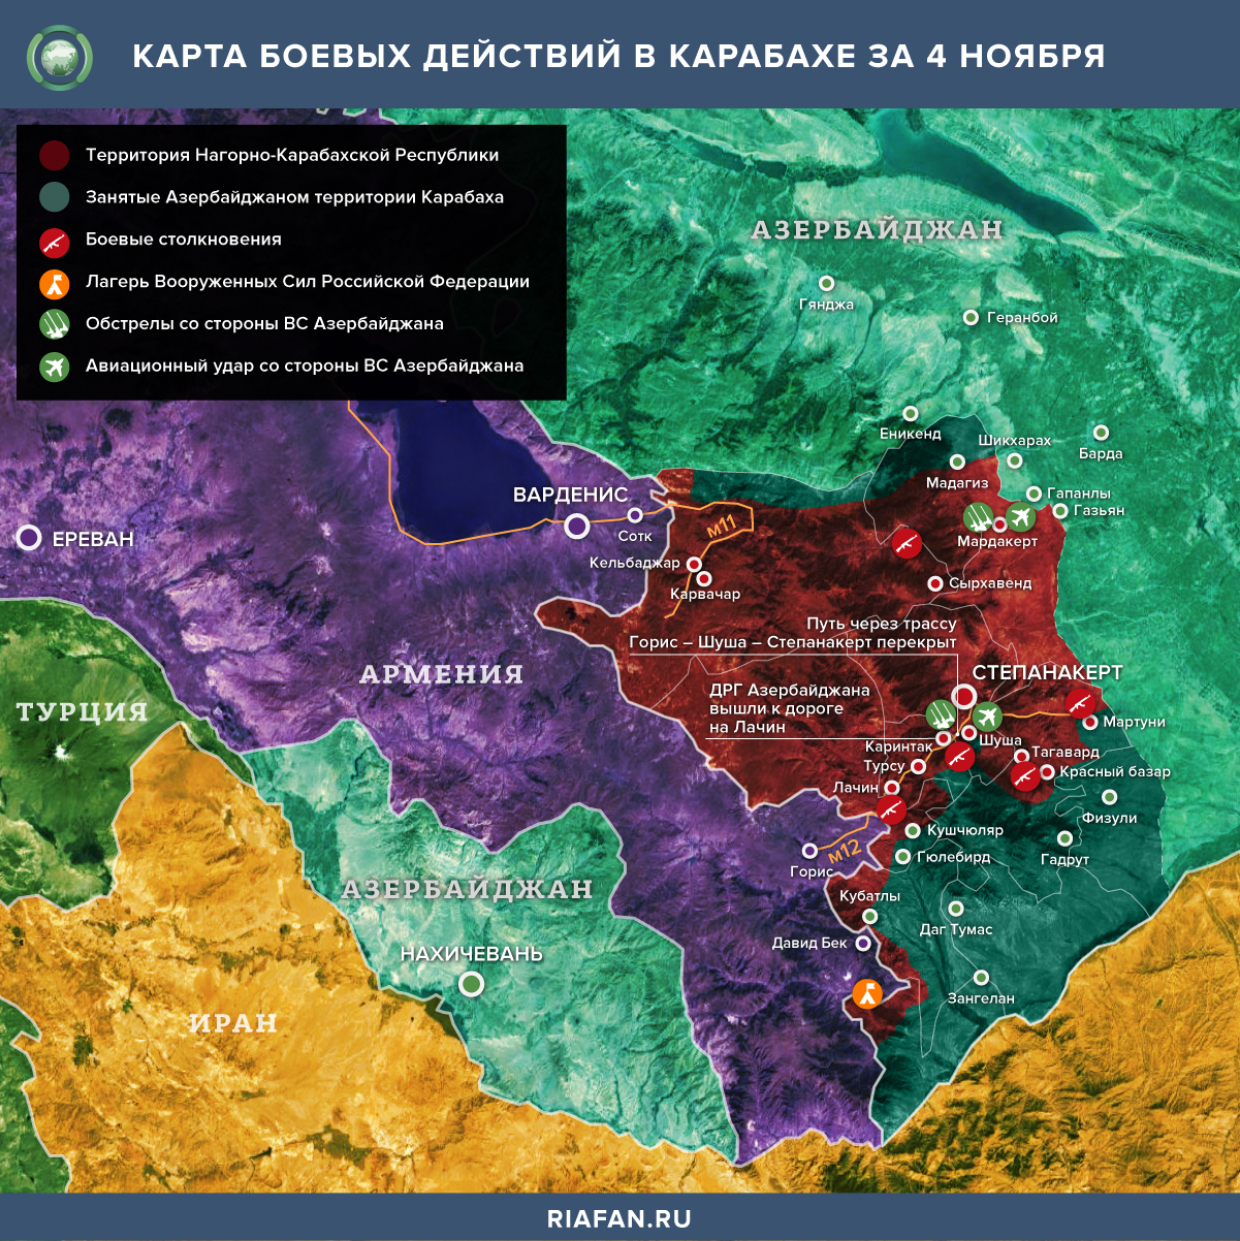 Карта боевых действий в Нагорном Карабахе за 4 ноября